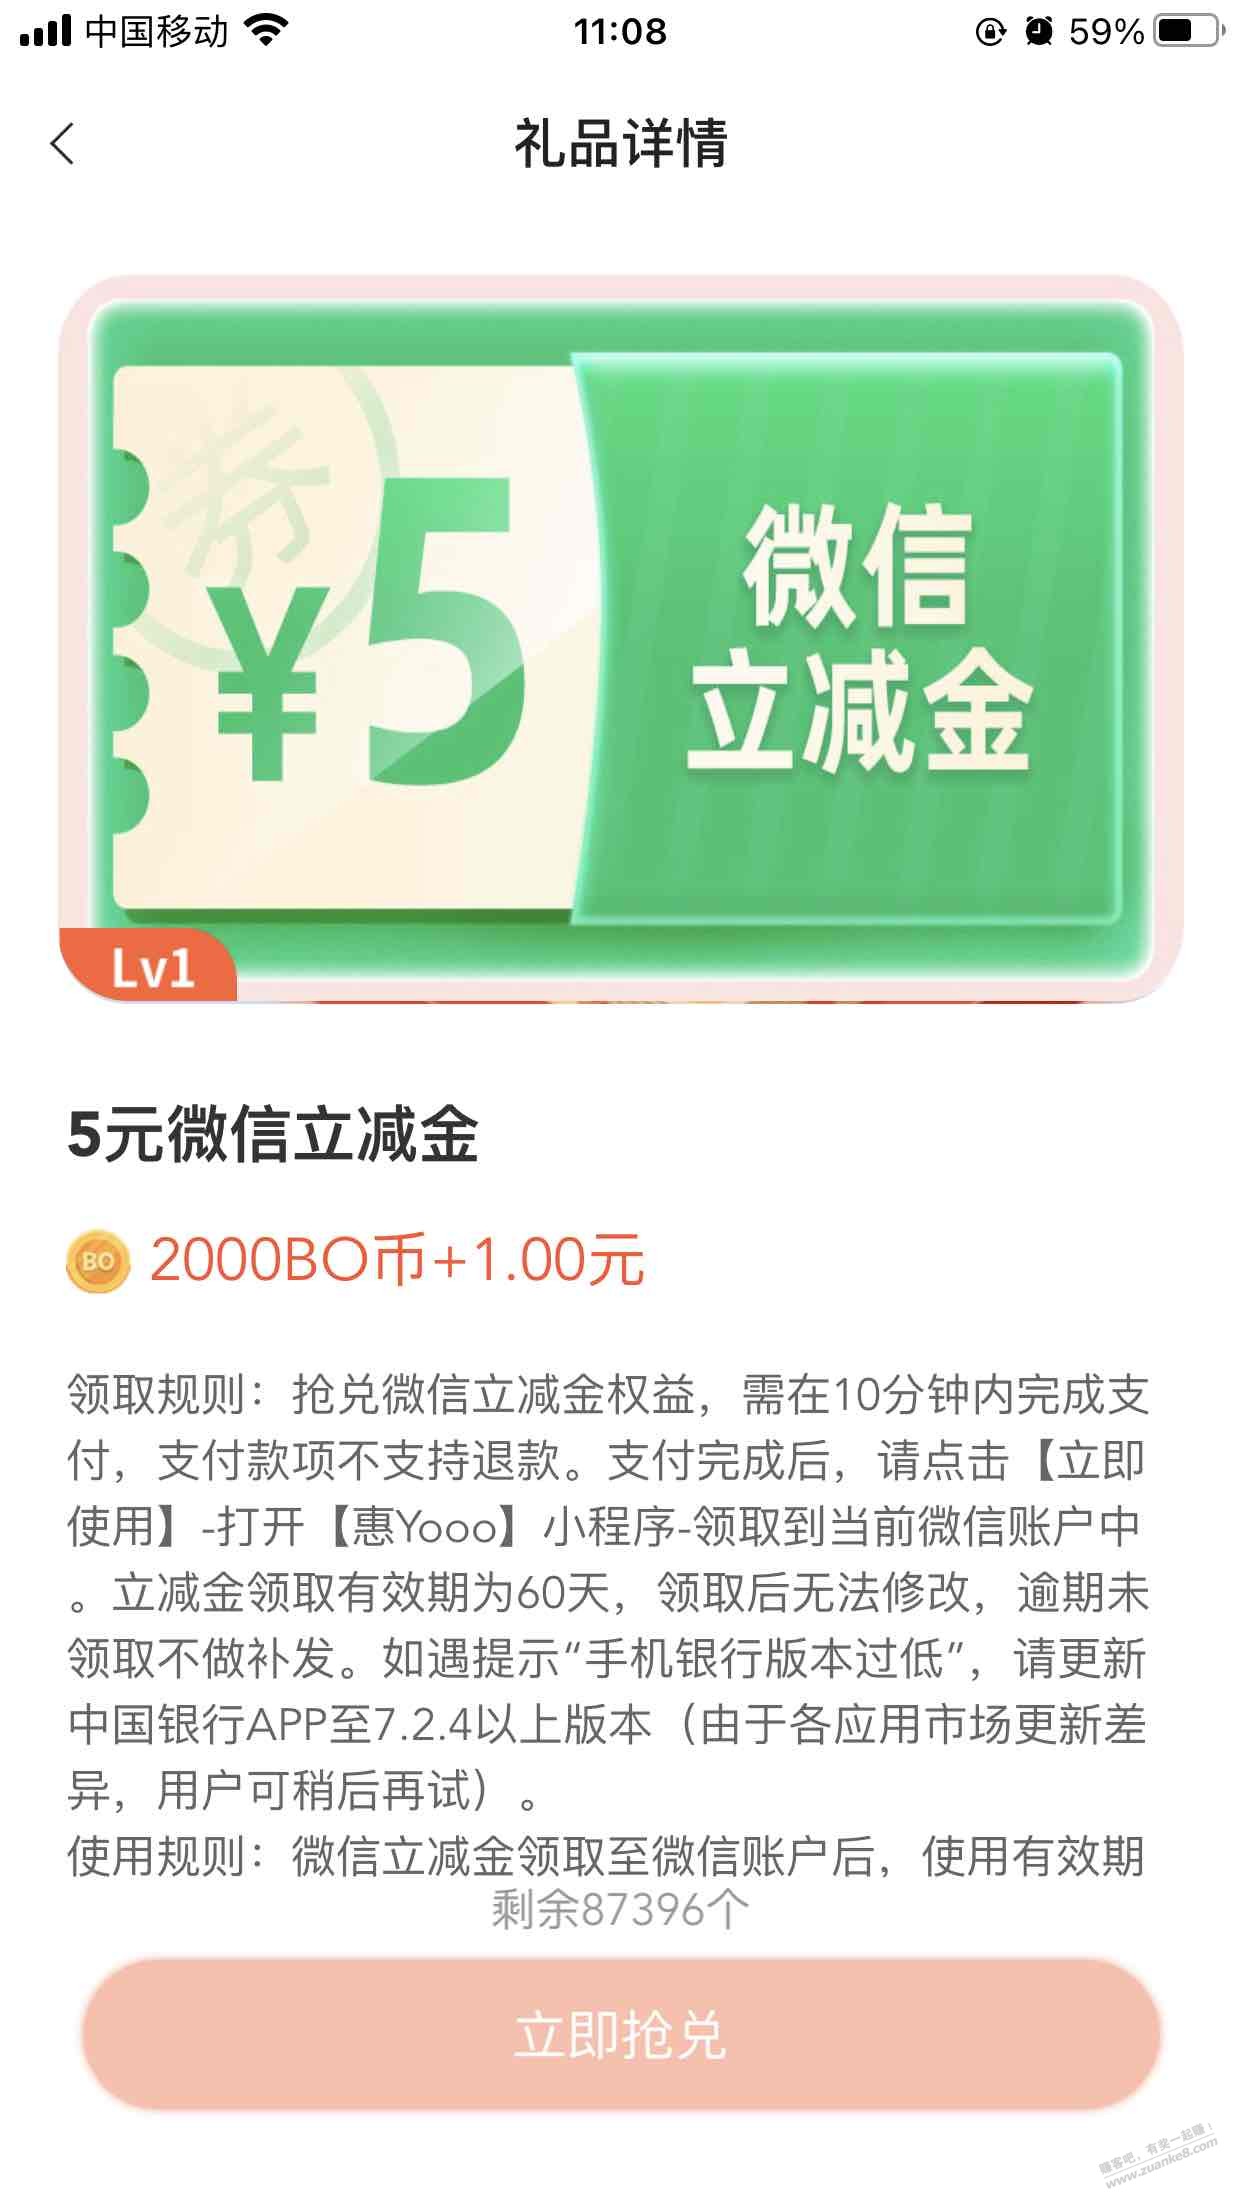 中行app-生活-广告BoBo鱼塘-兑换5立减-还有库存-惠小助(52huixz.com)